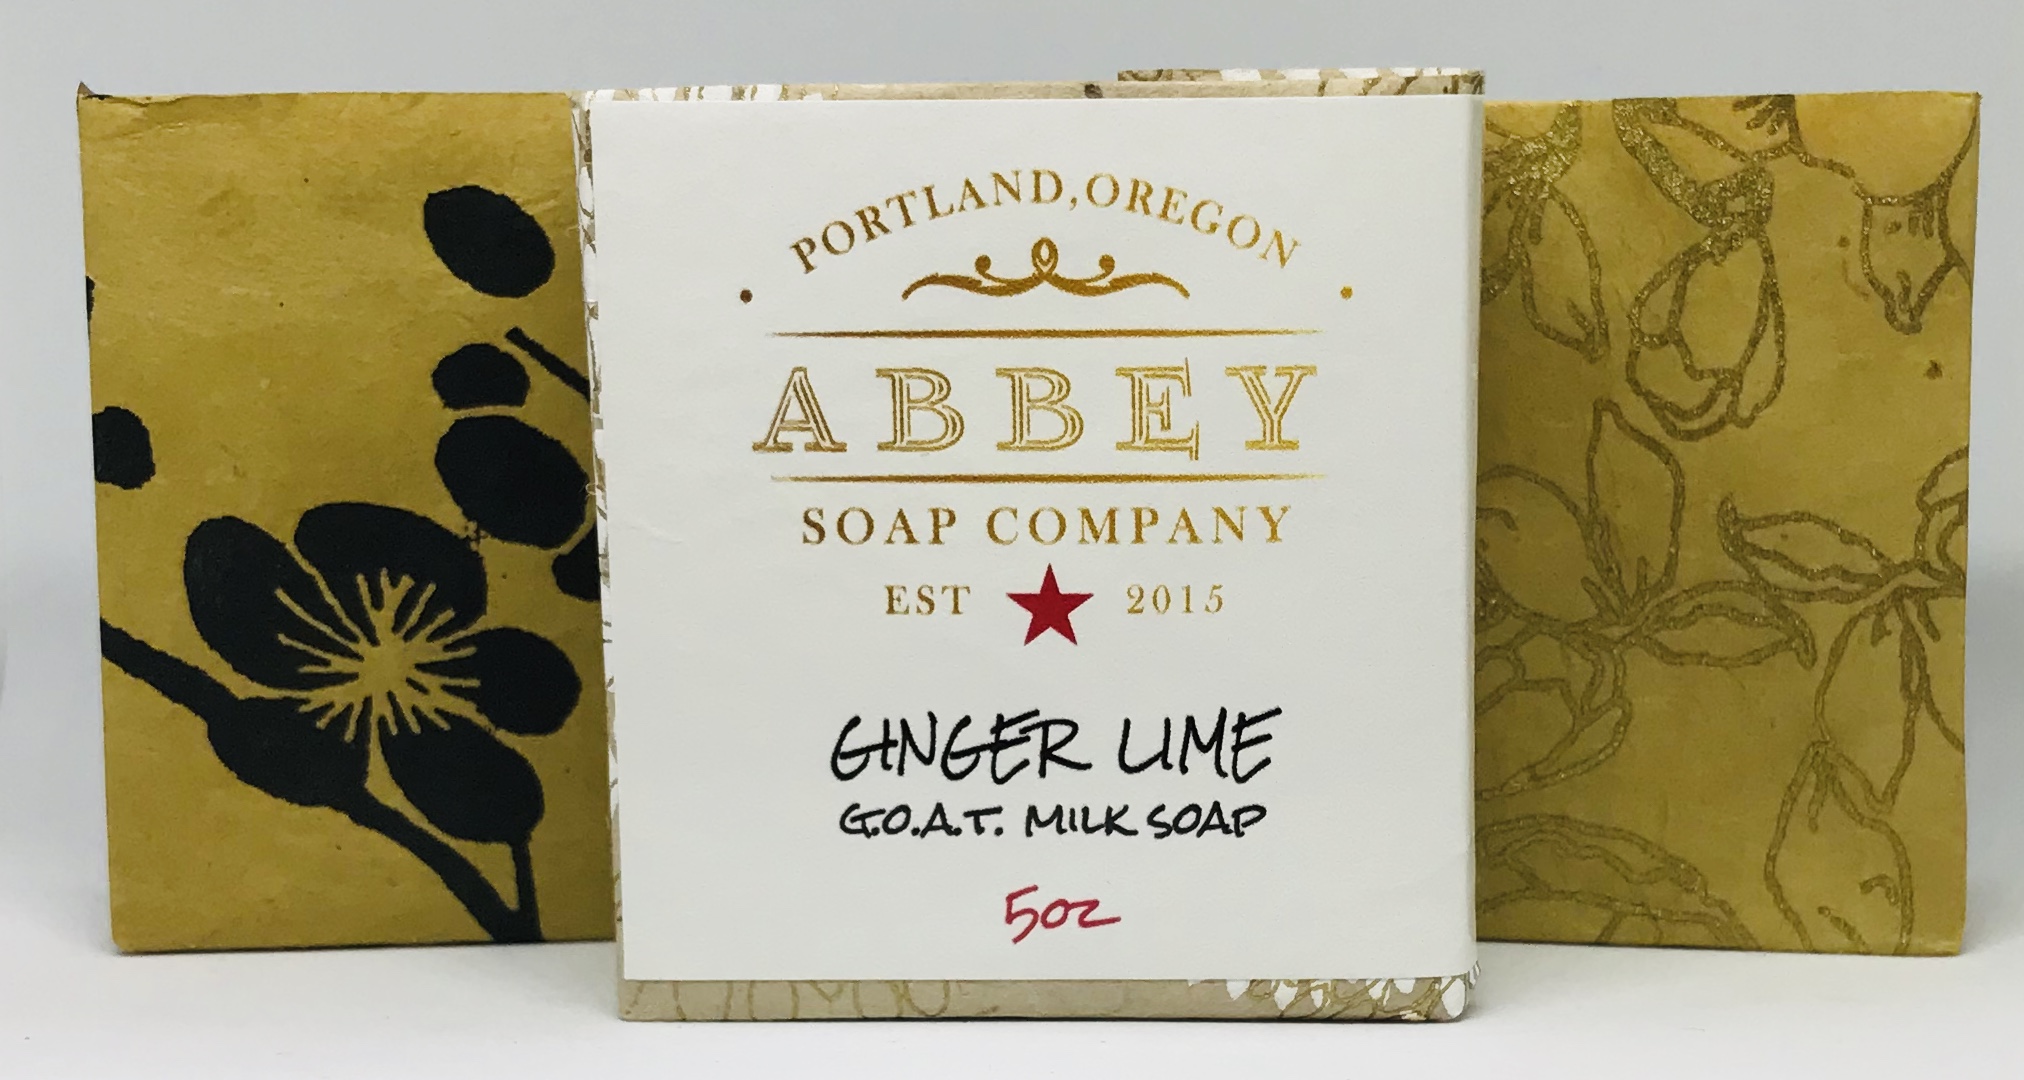 Ginger Lime Goat Milk Soap